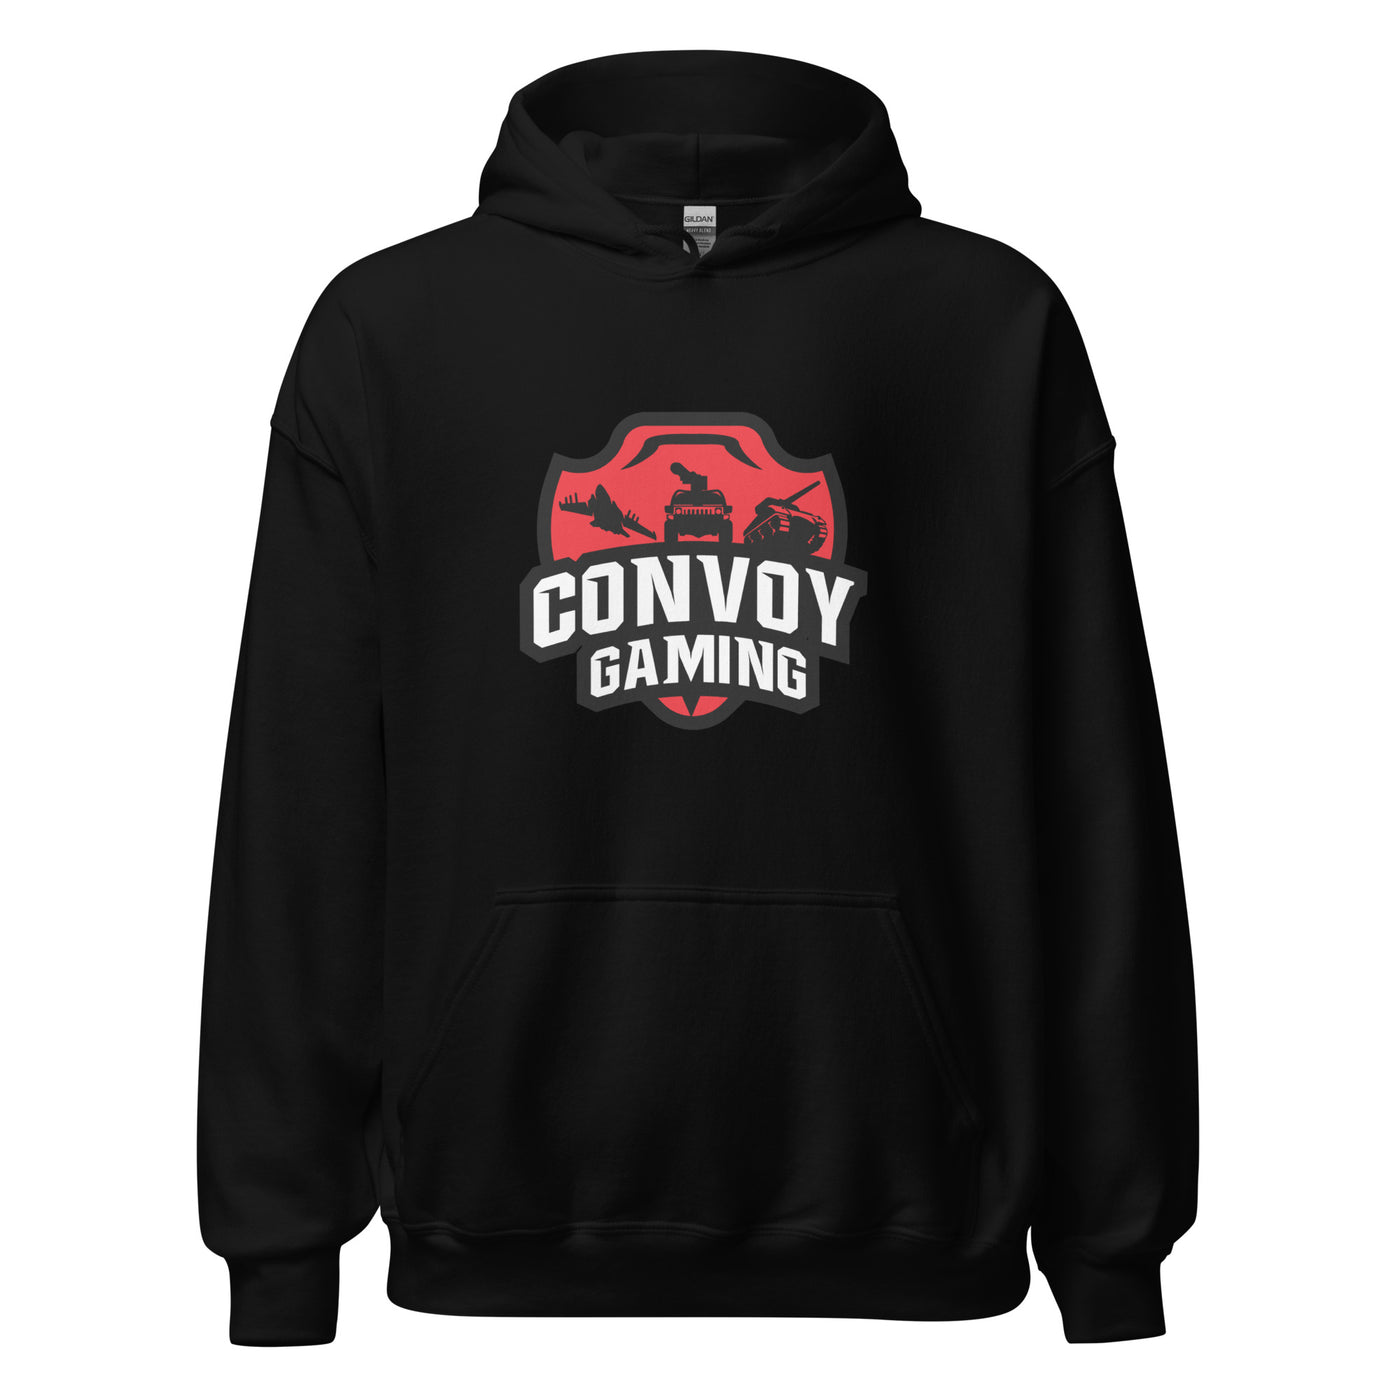 Convoy Gaming Unisex Hoodie